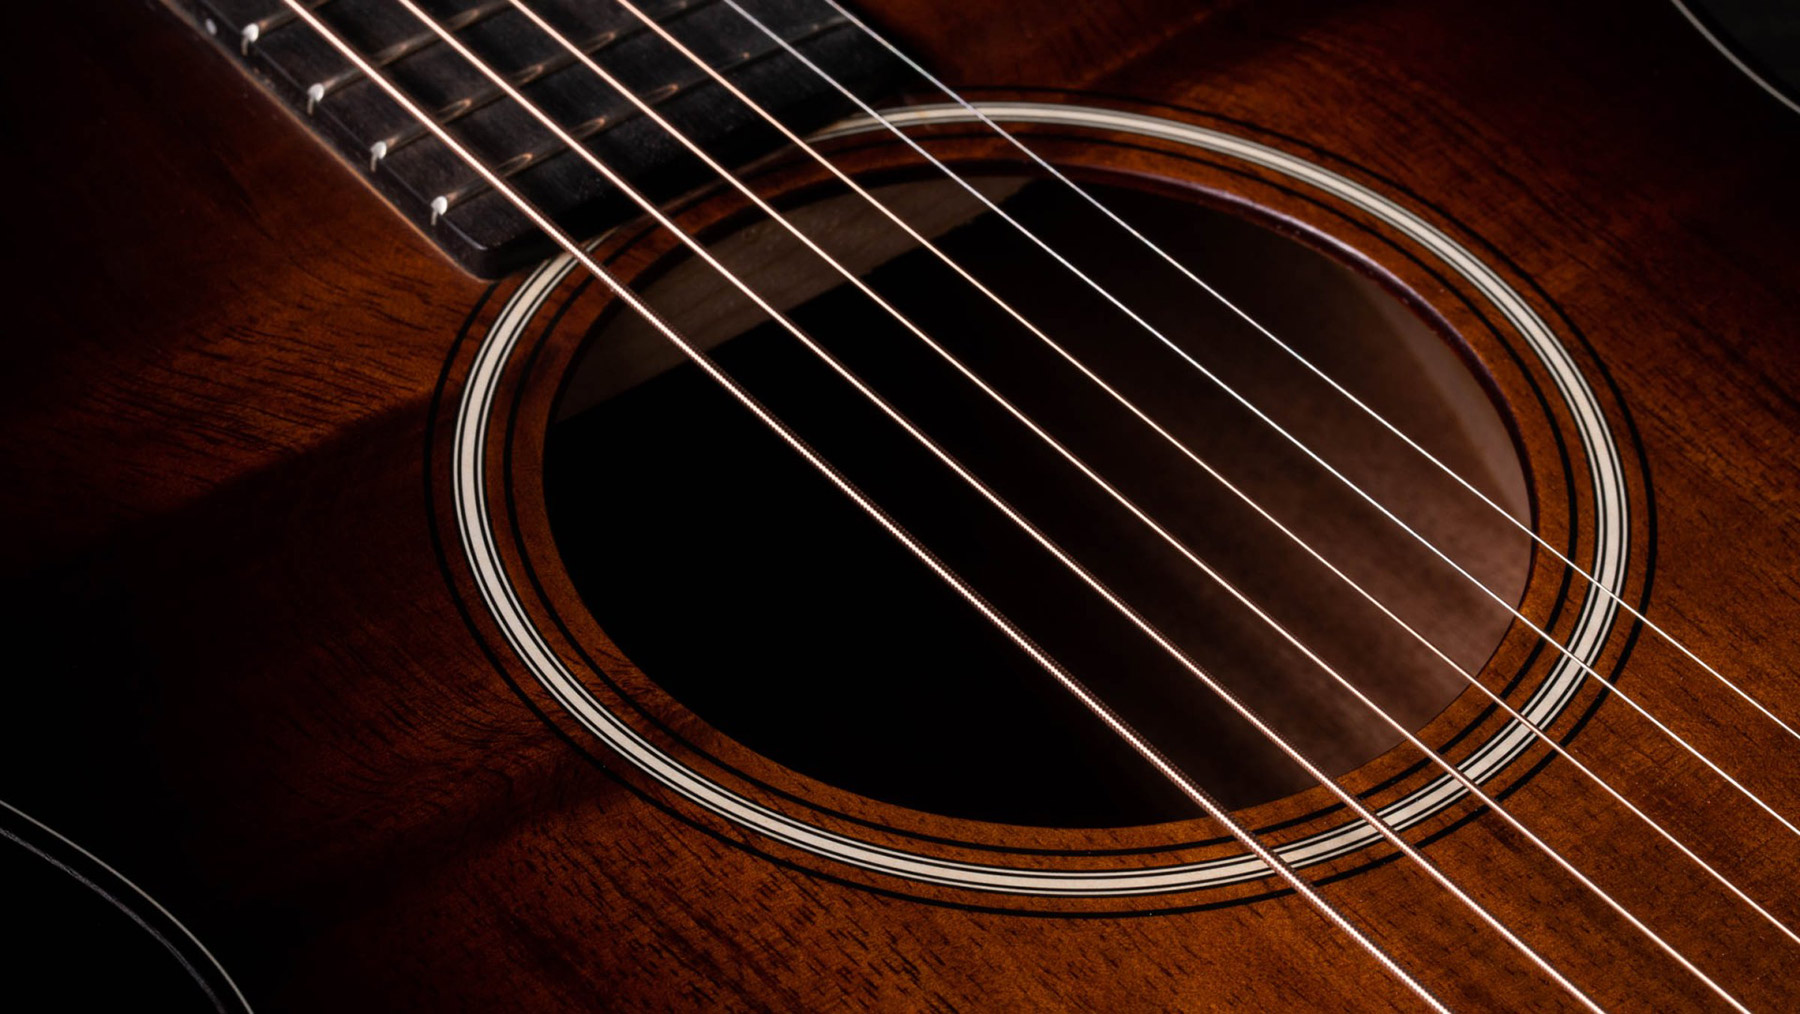 Taylor Gs Mini-e Koa Plus Parlor Tout Koa Eb Es-2 - Shaded Edge Burst - Travel acoustic guitar - Variation 3